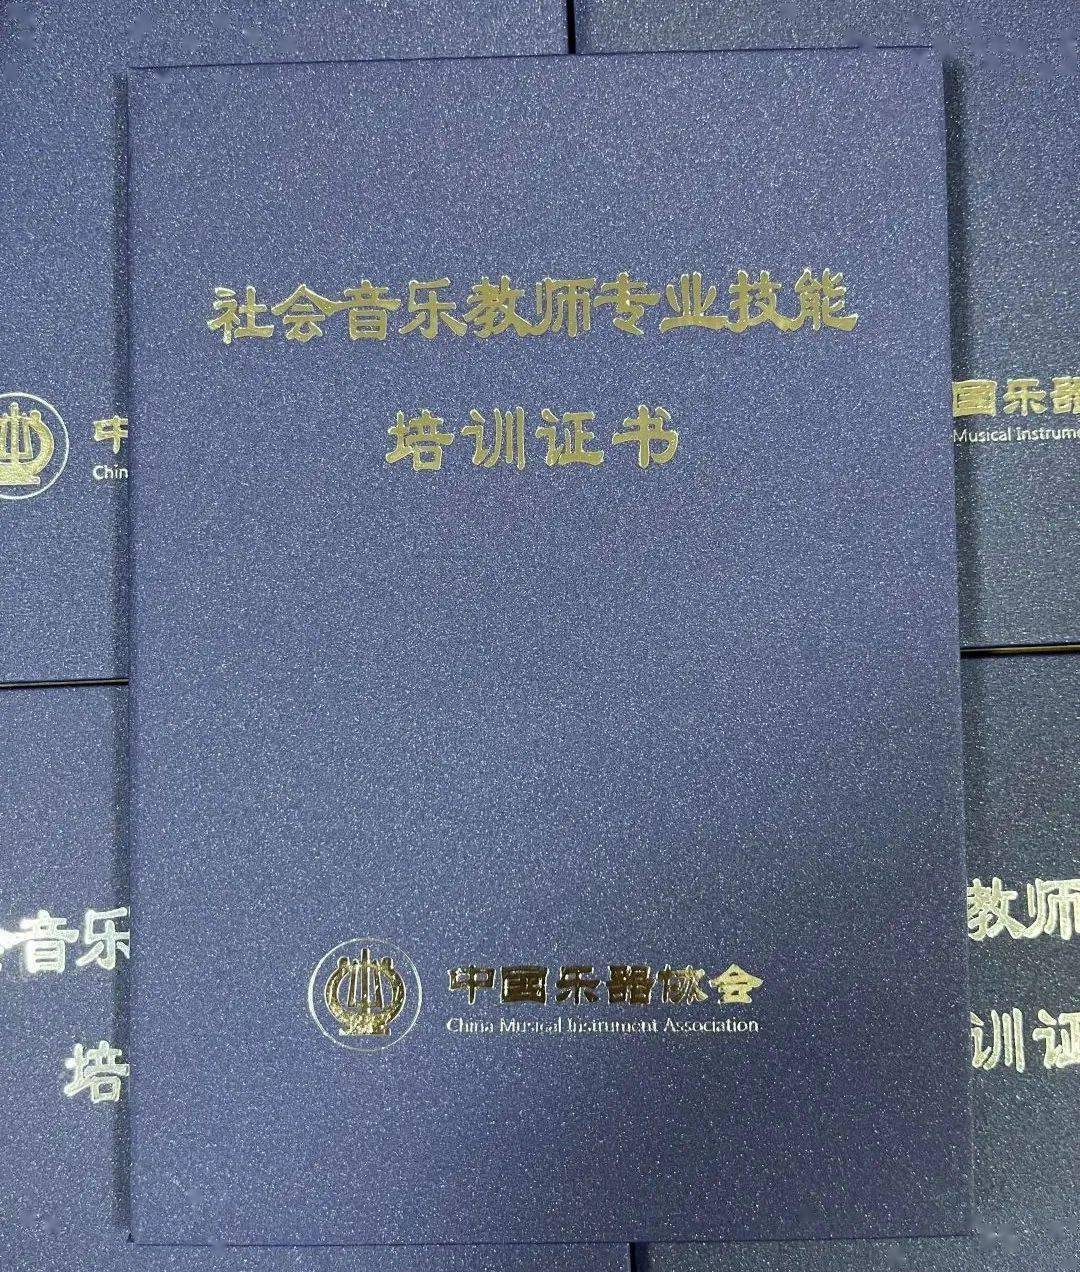 吉他中国 中国乐器协会音乐教育专业委员会的纸质结业证书)面向全社会